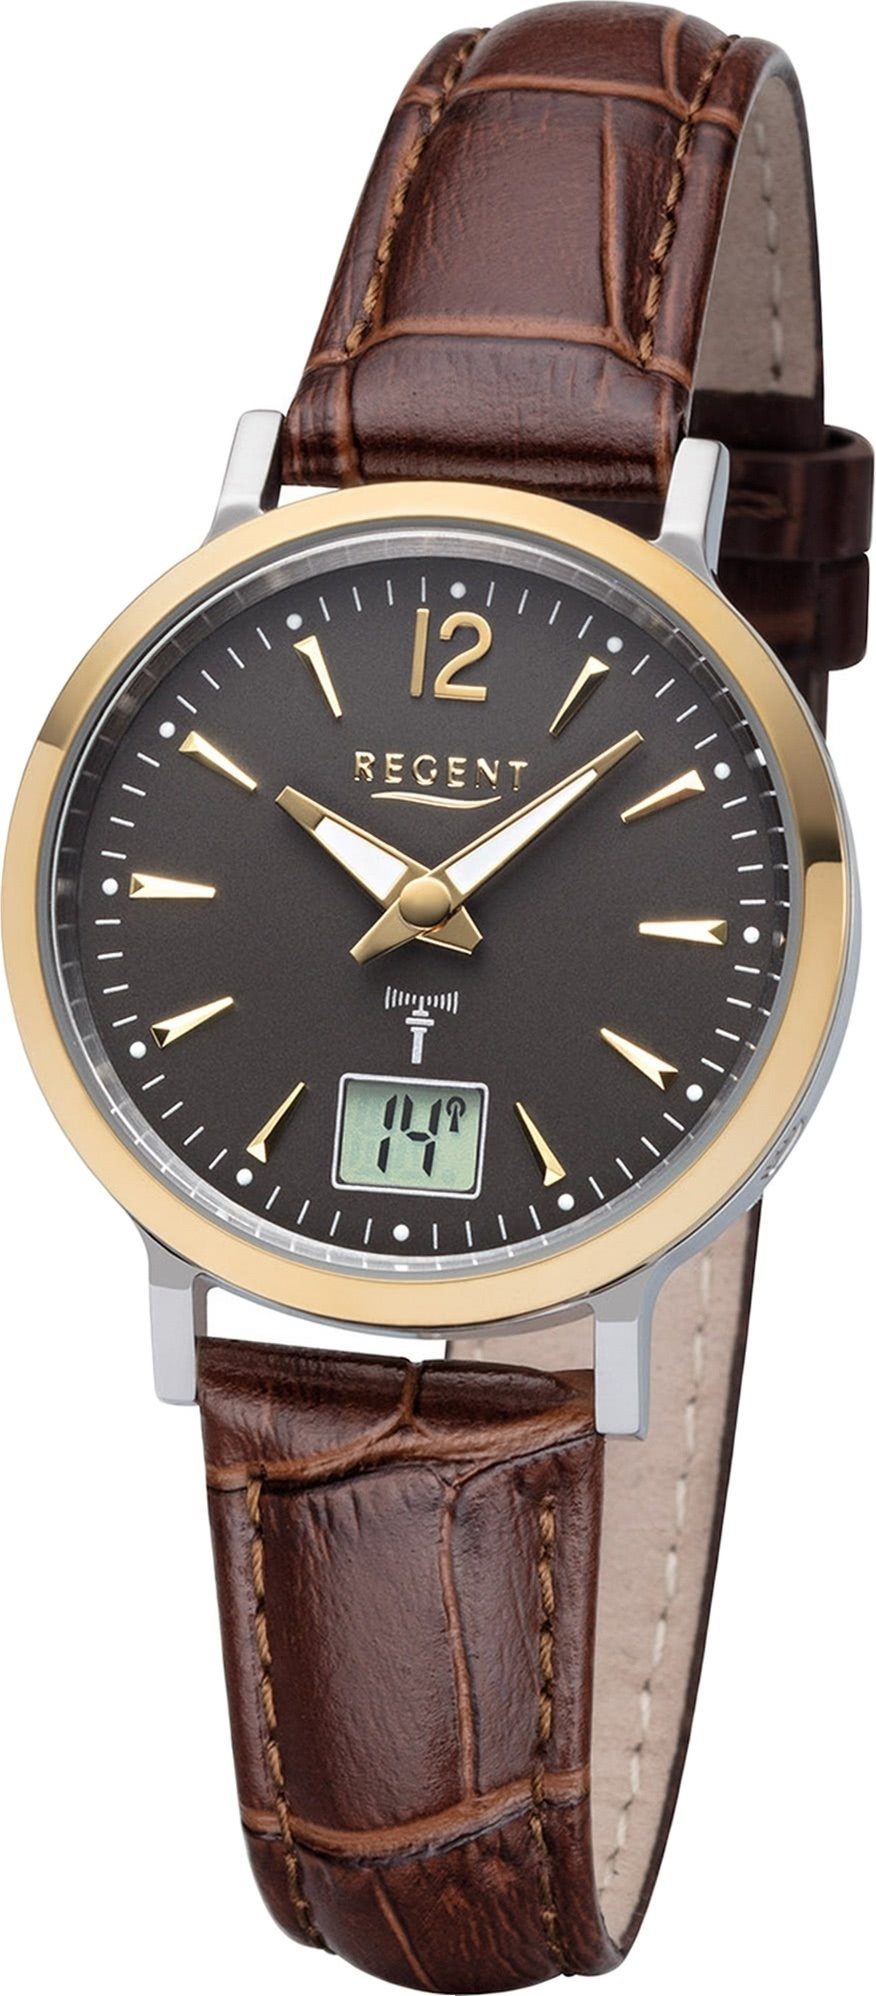 Regent Funkuhr Regent Leder Damen Uhr FR-257, Damenuhr mit Lederarmband,  rundes Gehäuse (ca. 30mm), Elegant-Style